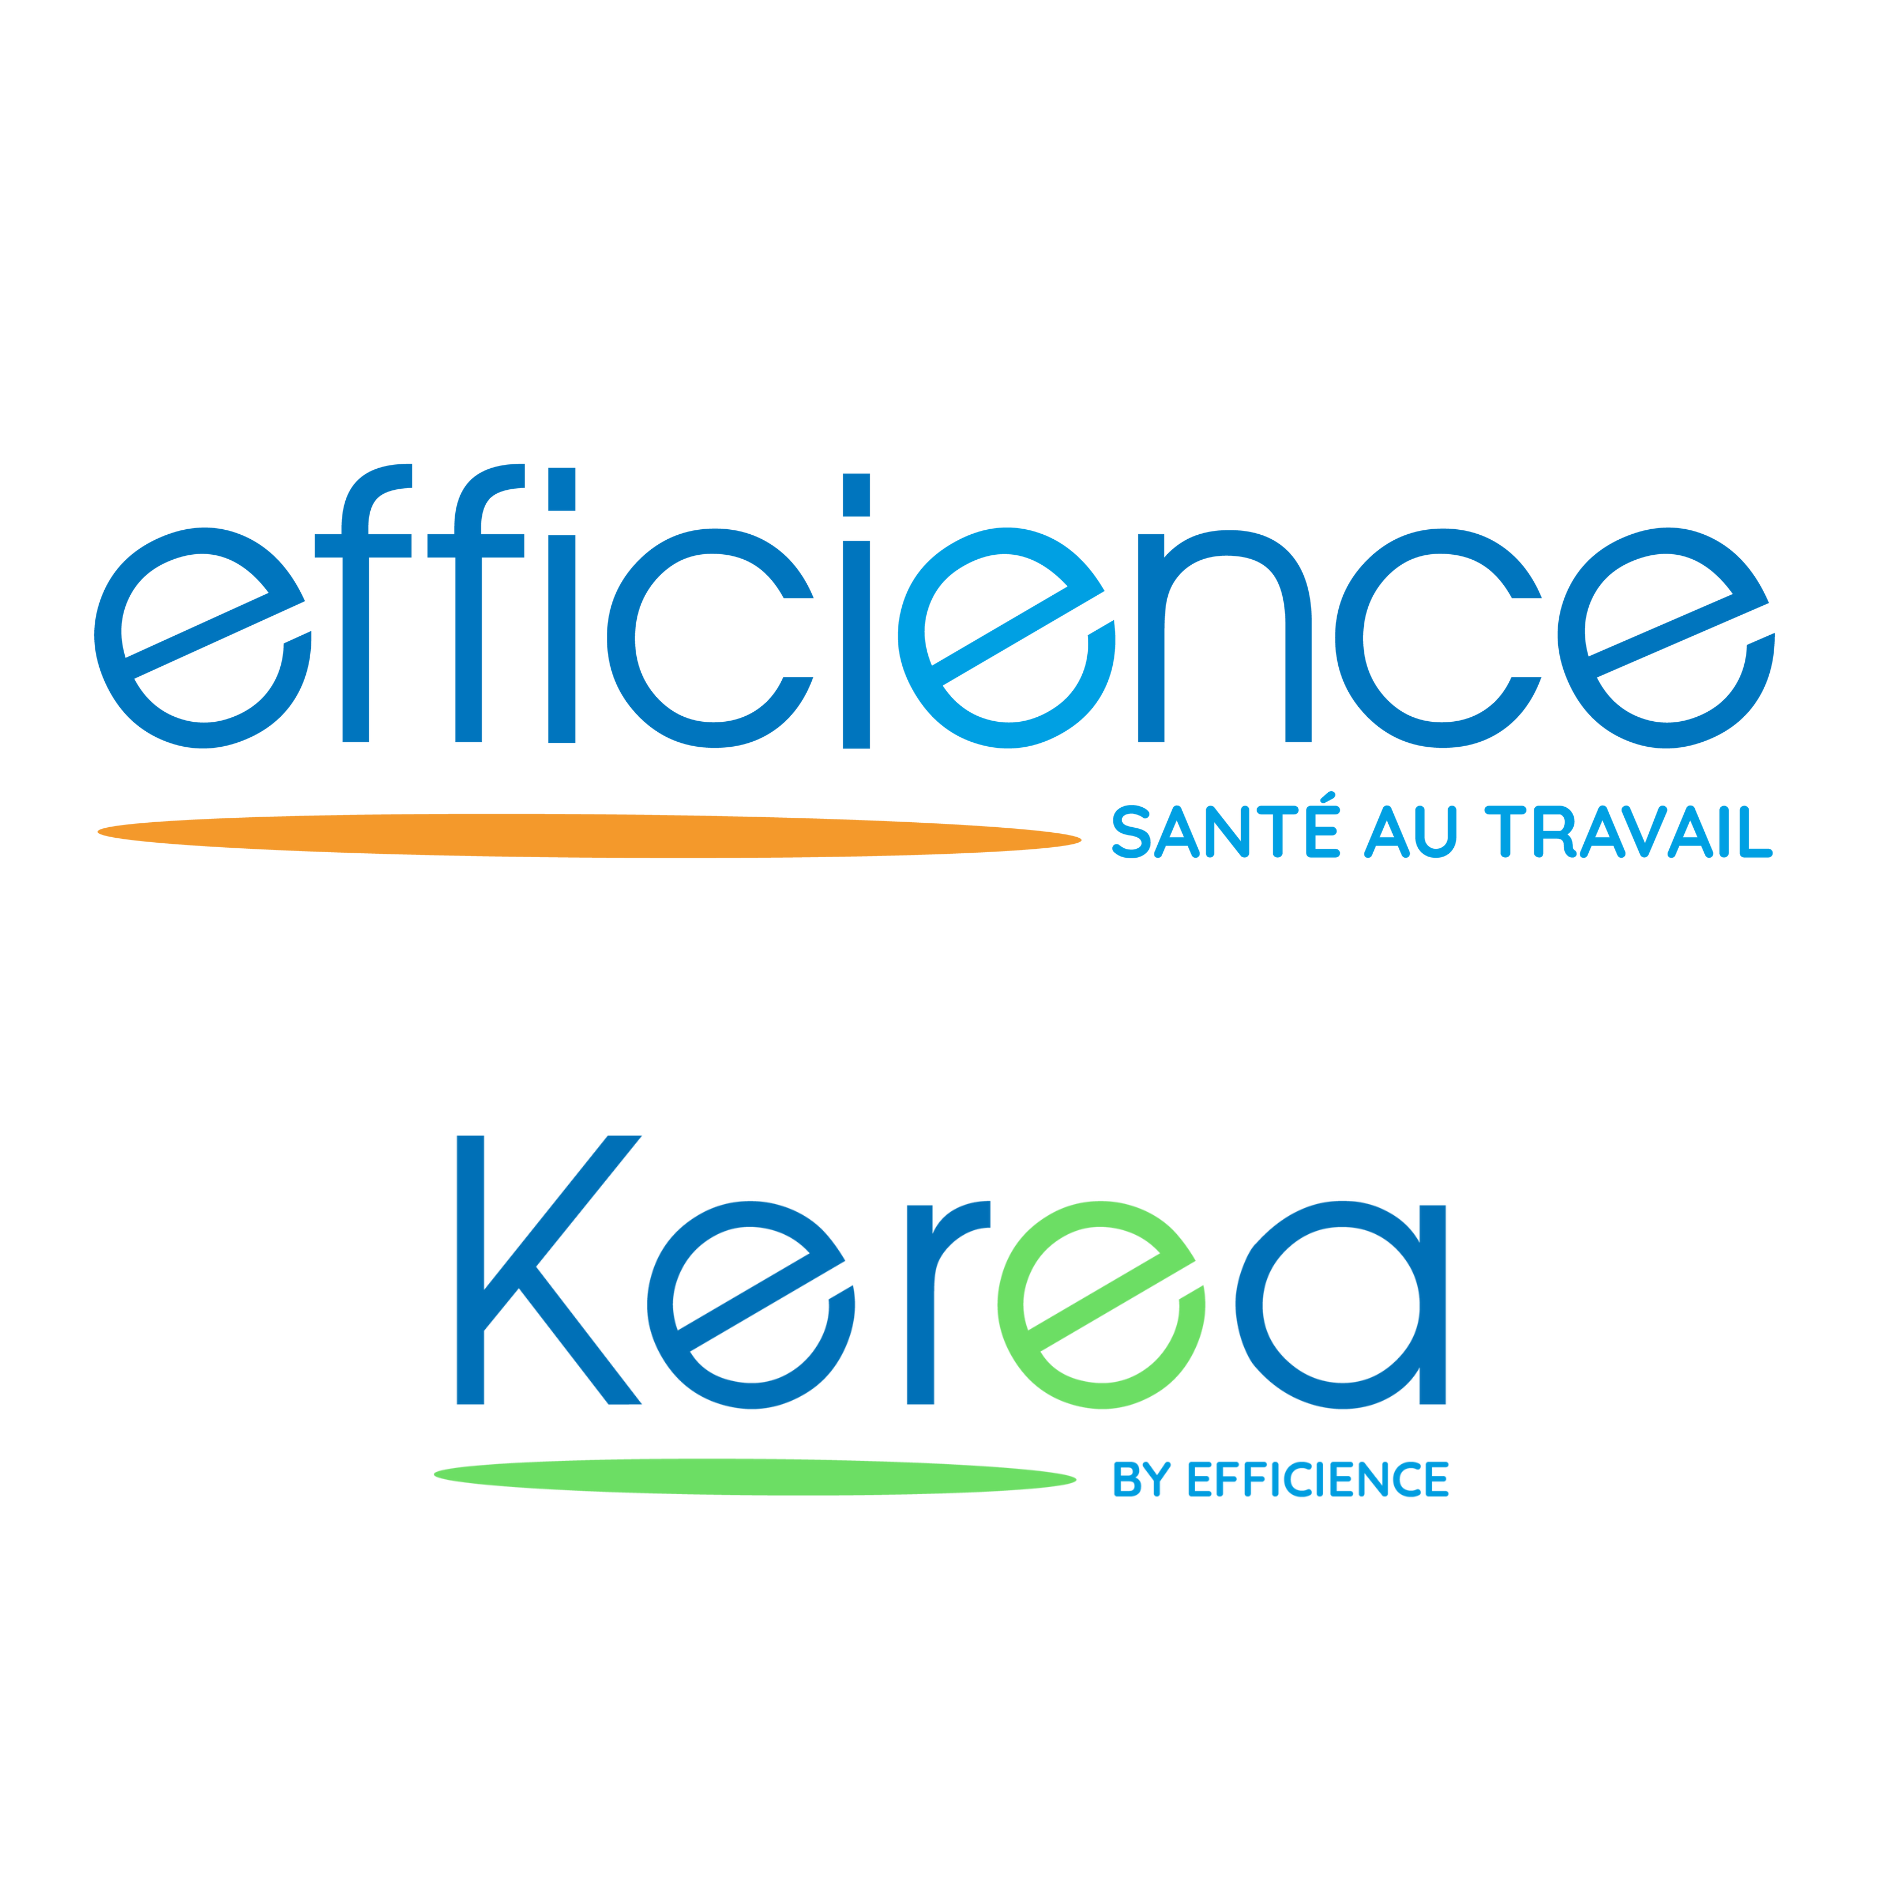 EFFICIENCE SANTE AU TRAVAIL - KEREA